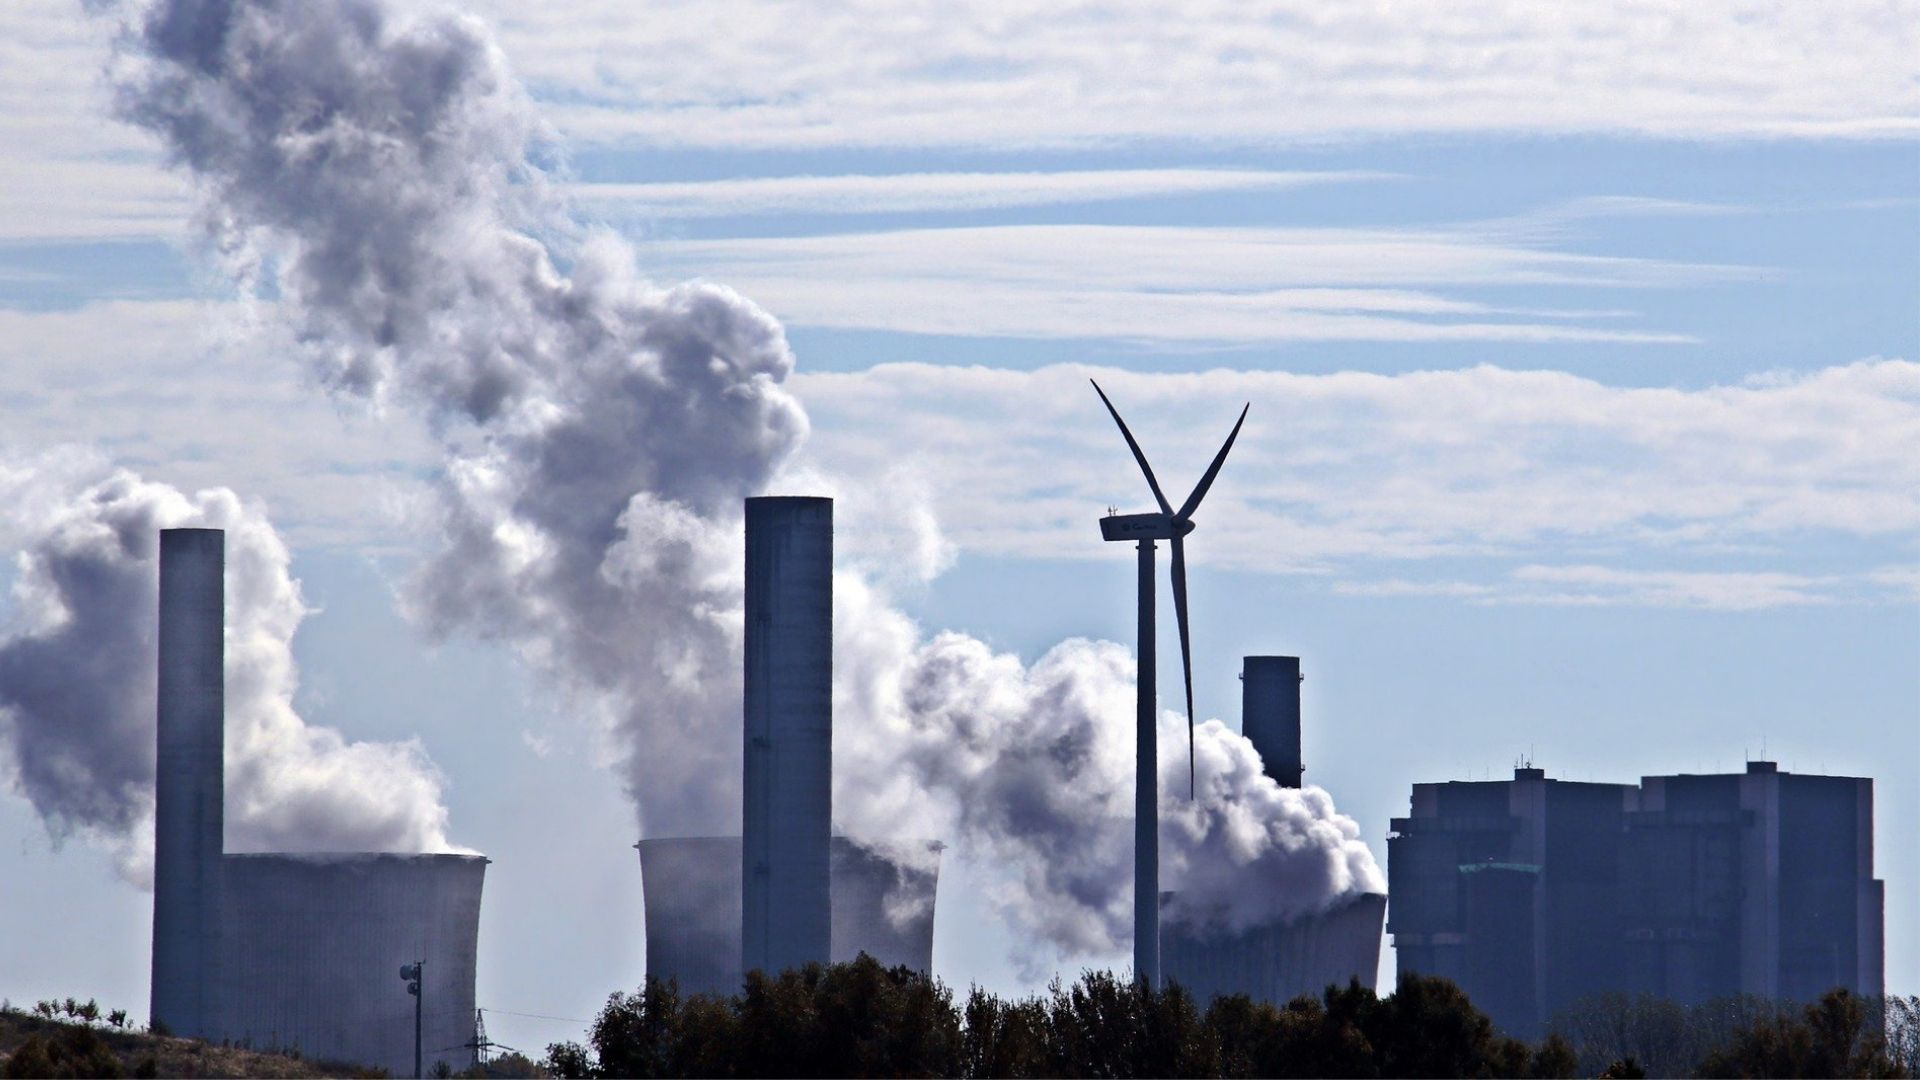 Le Giec appelle tous les secteurs à une baisse des émissions immédiate